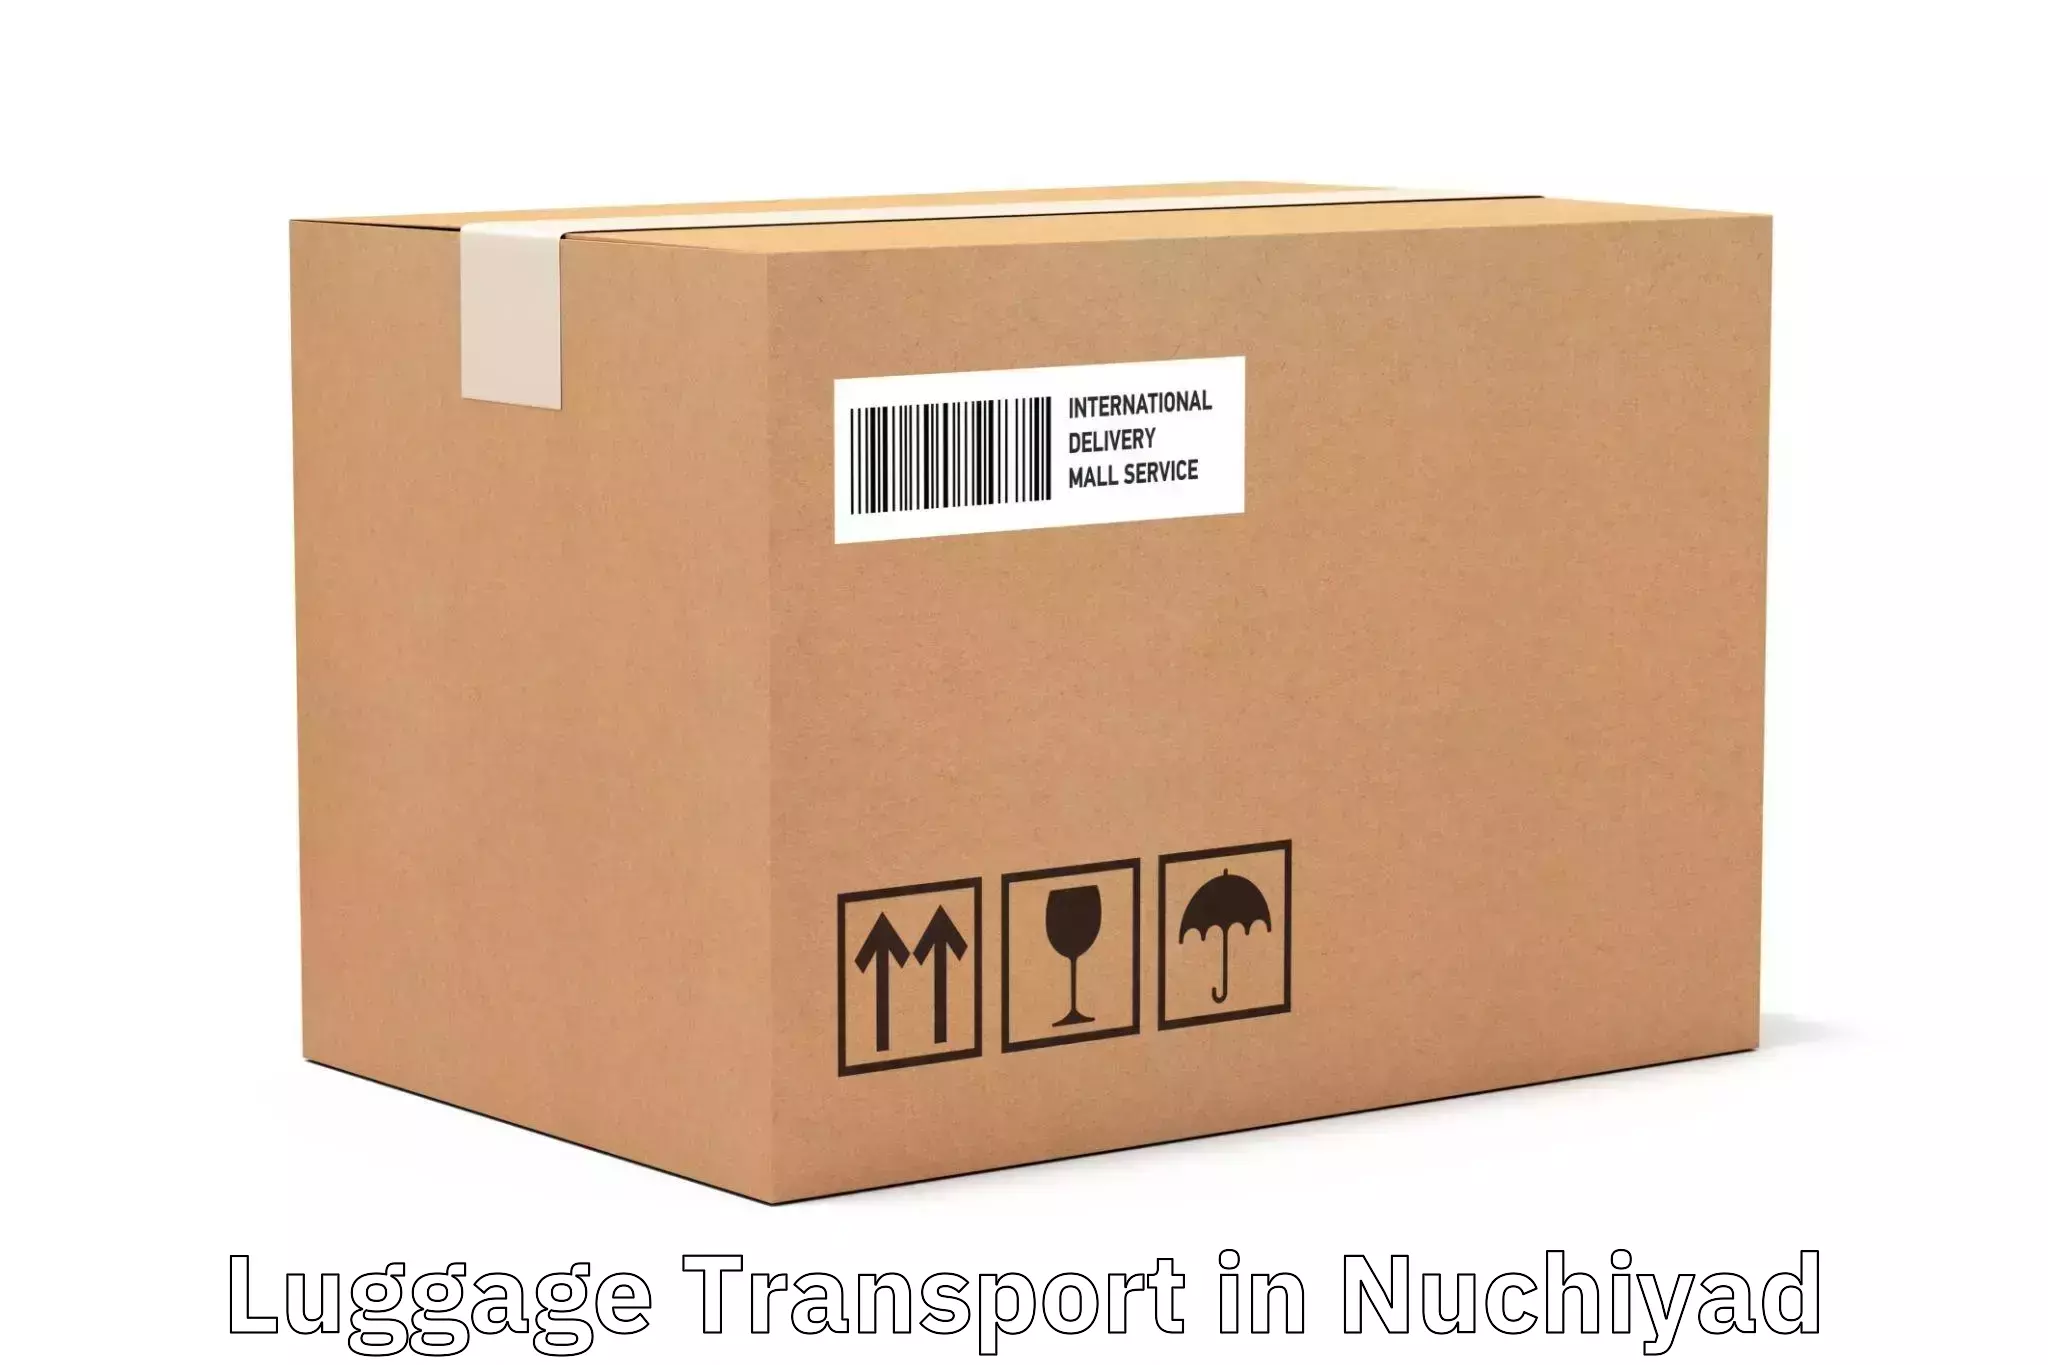 Luggage shipping estimate in Nuchiyad